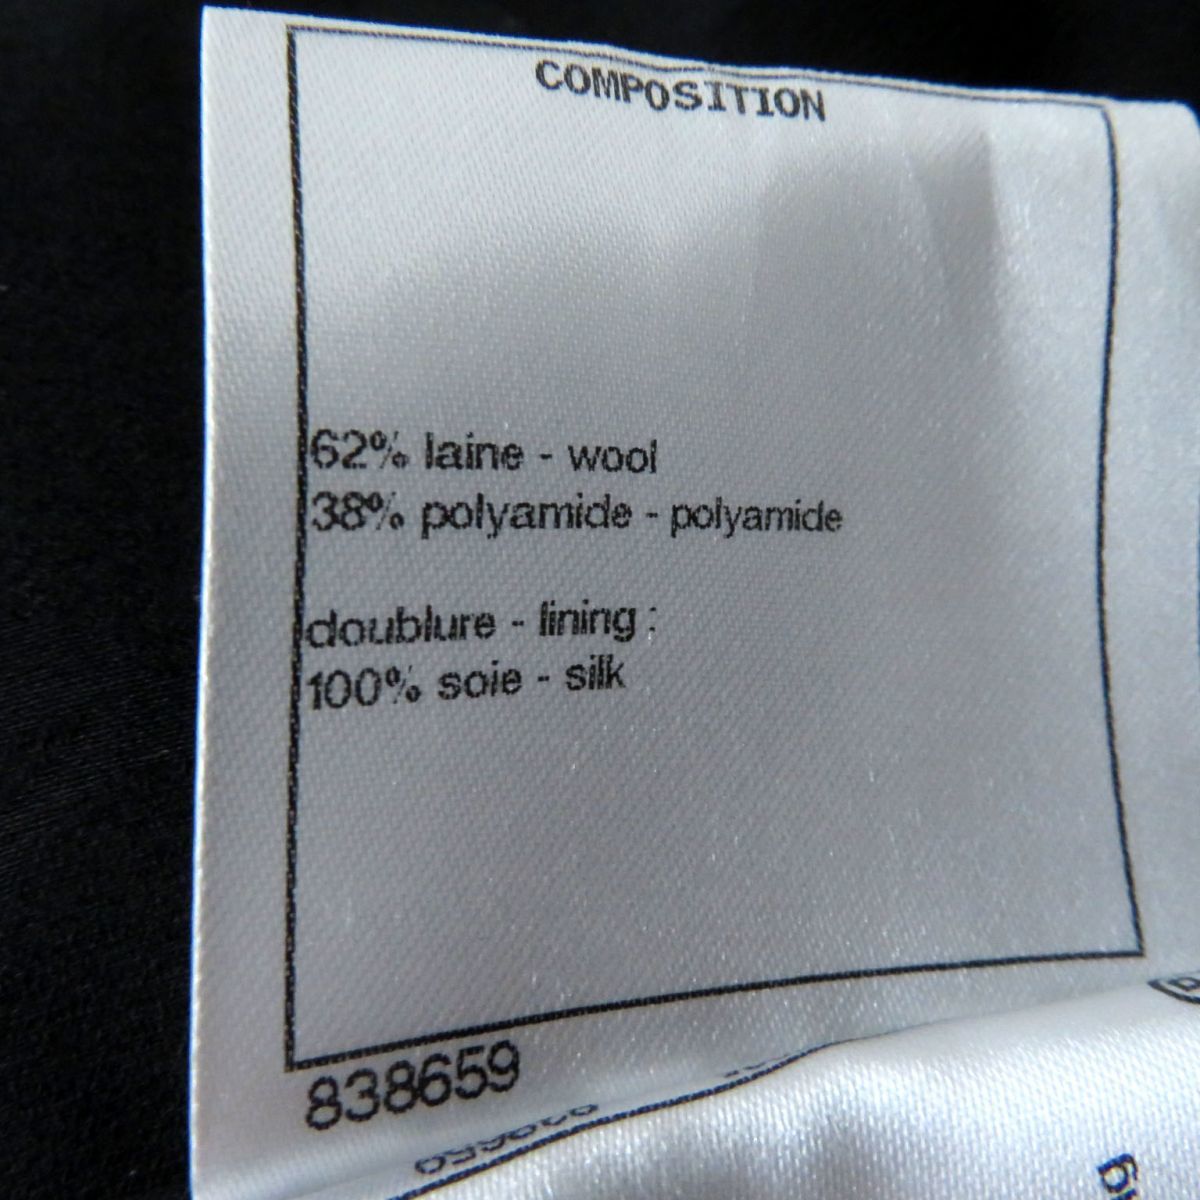  превосходный товар * Франция производства CHANEL Chanel P62079 женский здесь Mark кнопка имеется одиночный цвет твид пальто черный обратная сторона шелк 100% 34